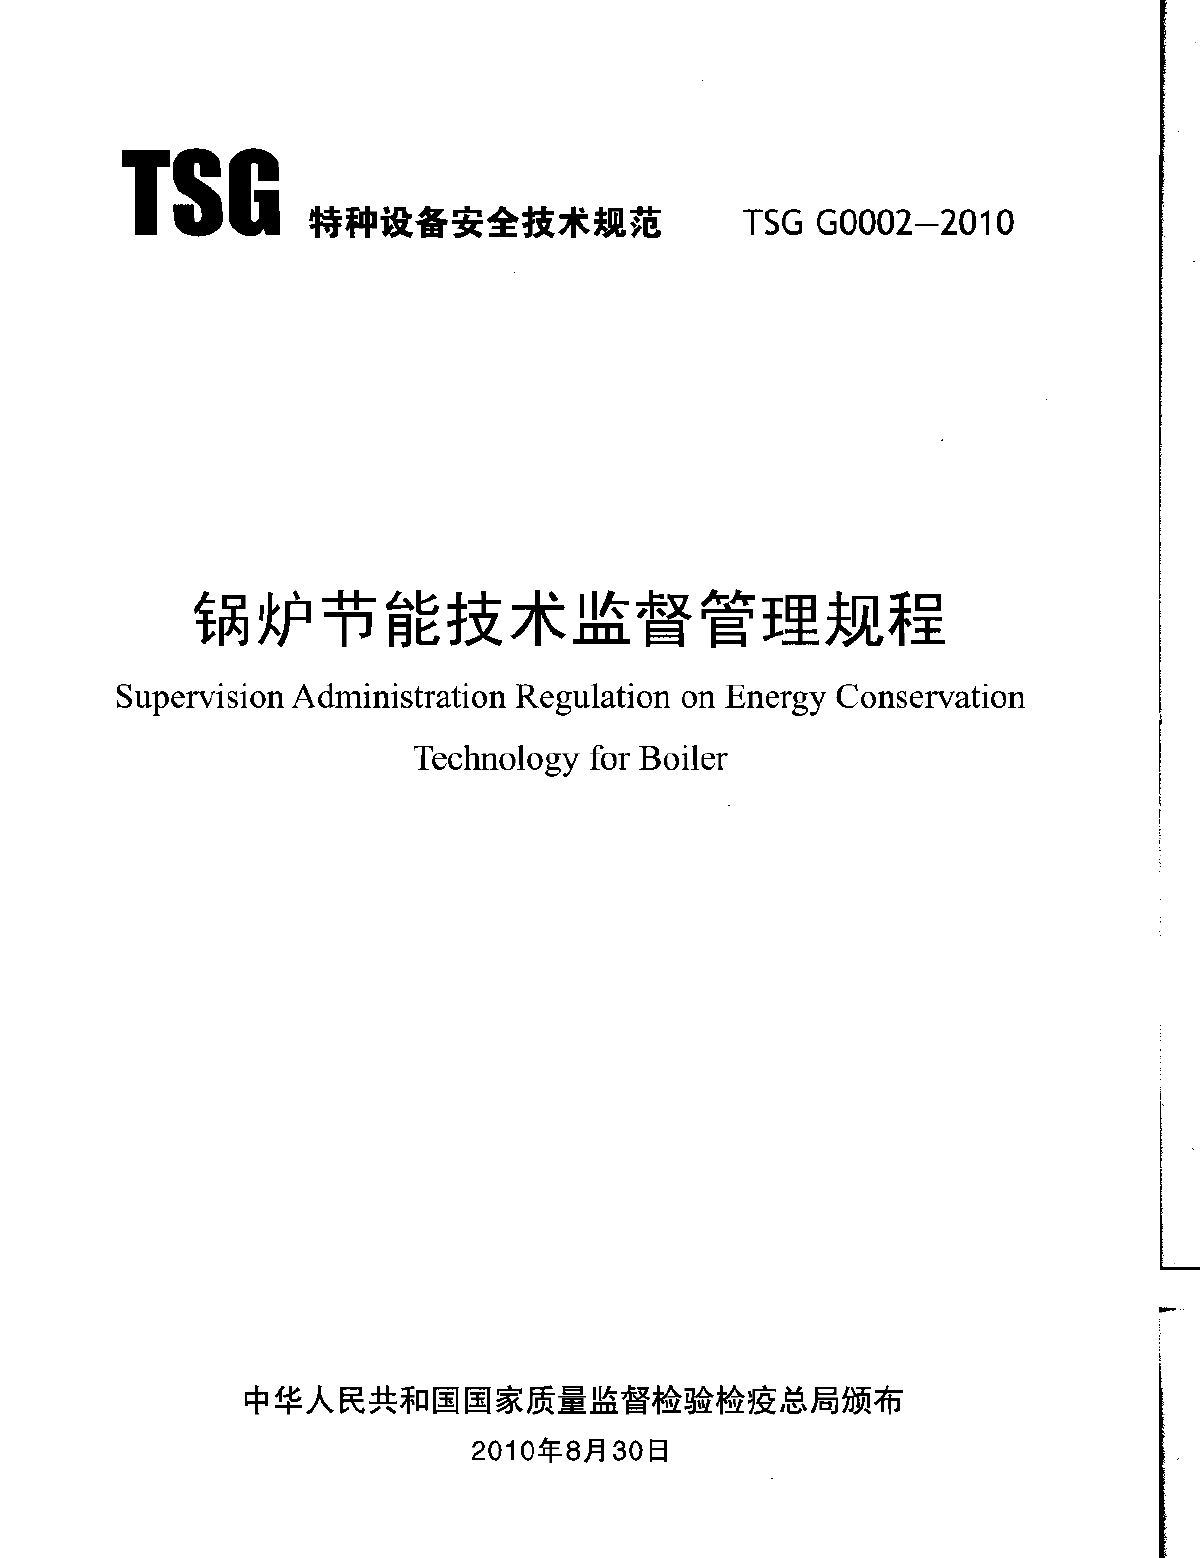 锅炉节能技术监督管理规程.pdf